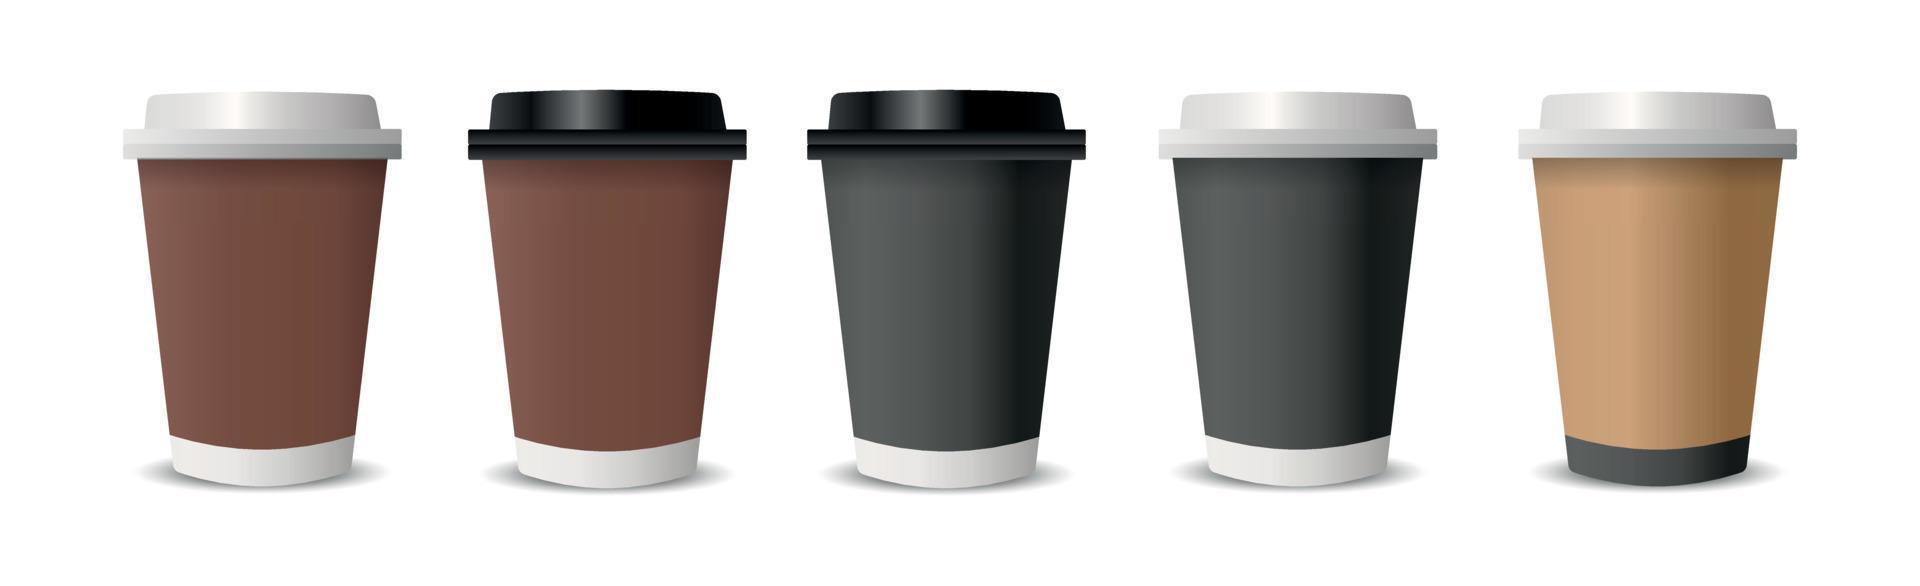 realistische kopjes voor koffie en thee op een witte achtergrond - vector